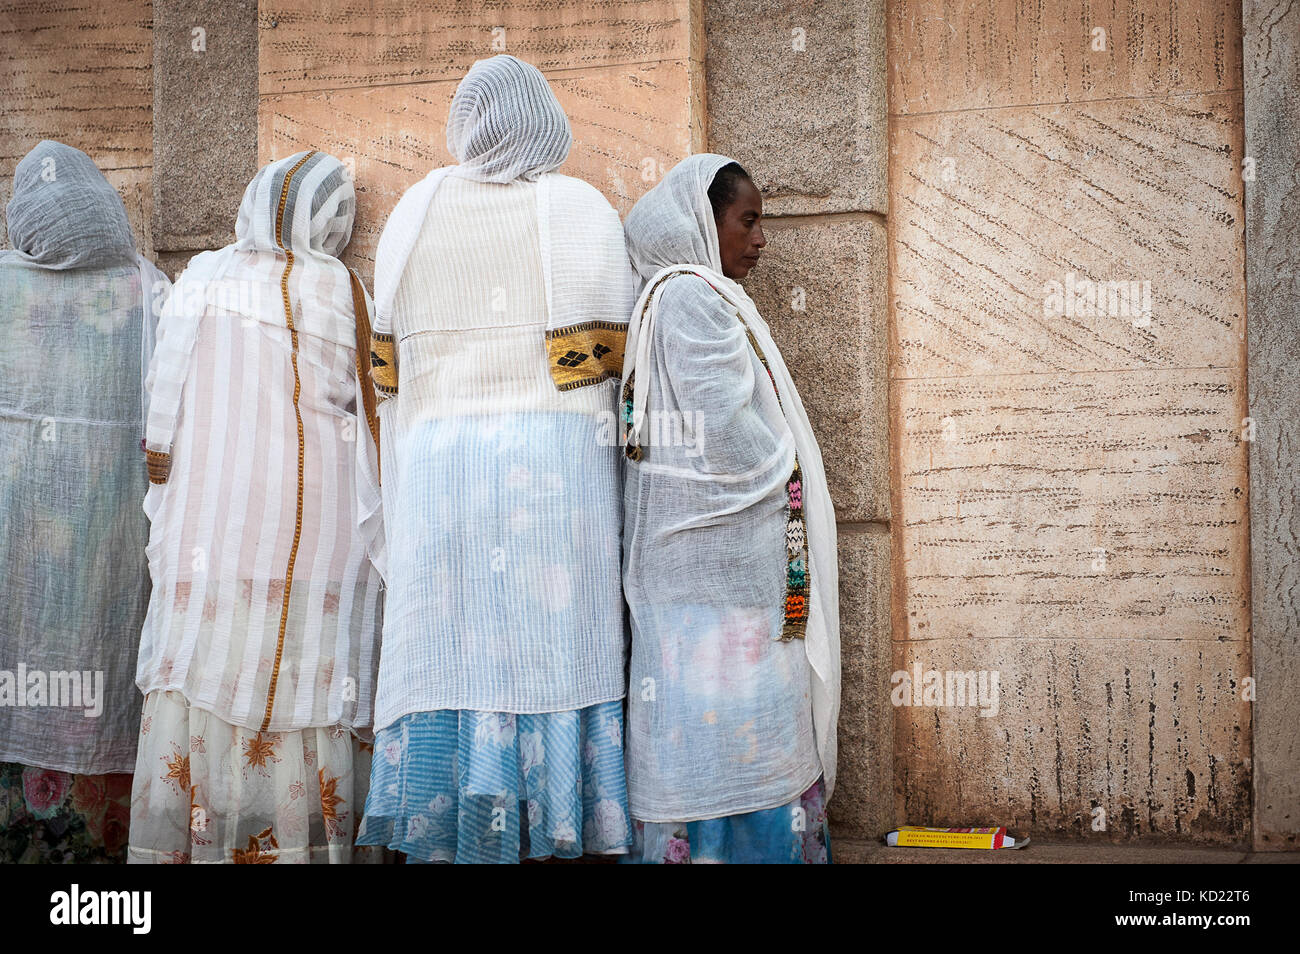 Celebrazione dans une eglise Chretienne dans la ville d'Asmara, les principales religioni en Erythrée sont le christianisme et l'islam, entre lesquelle Foto Stock